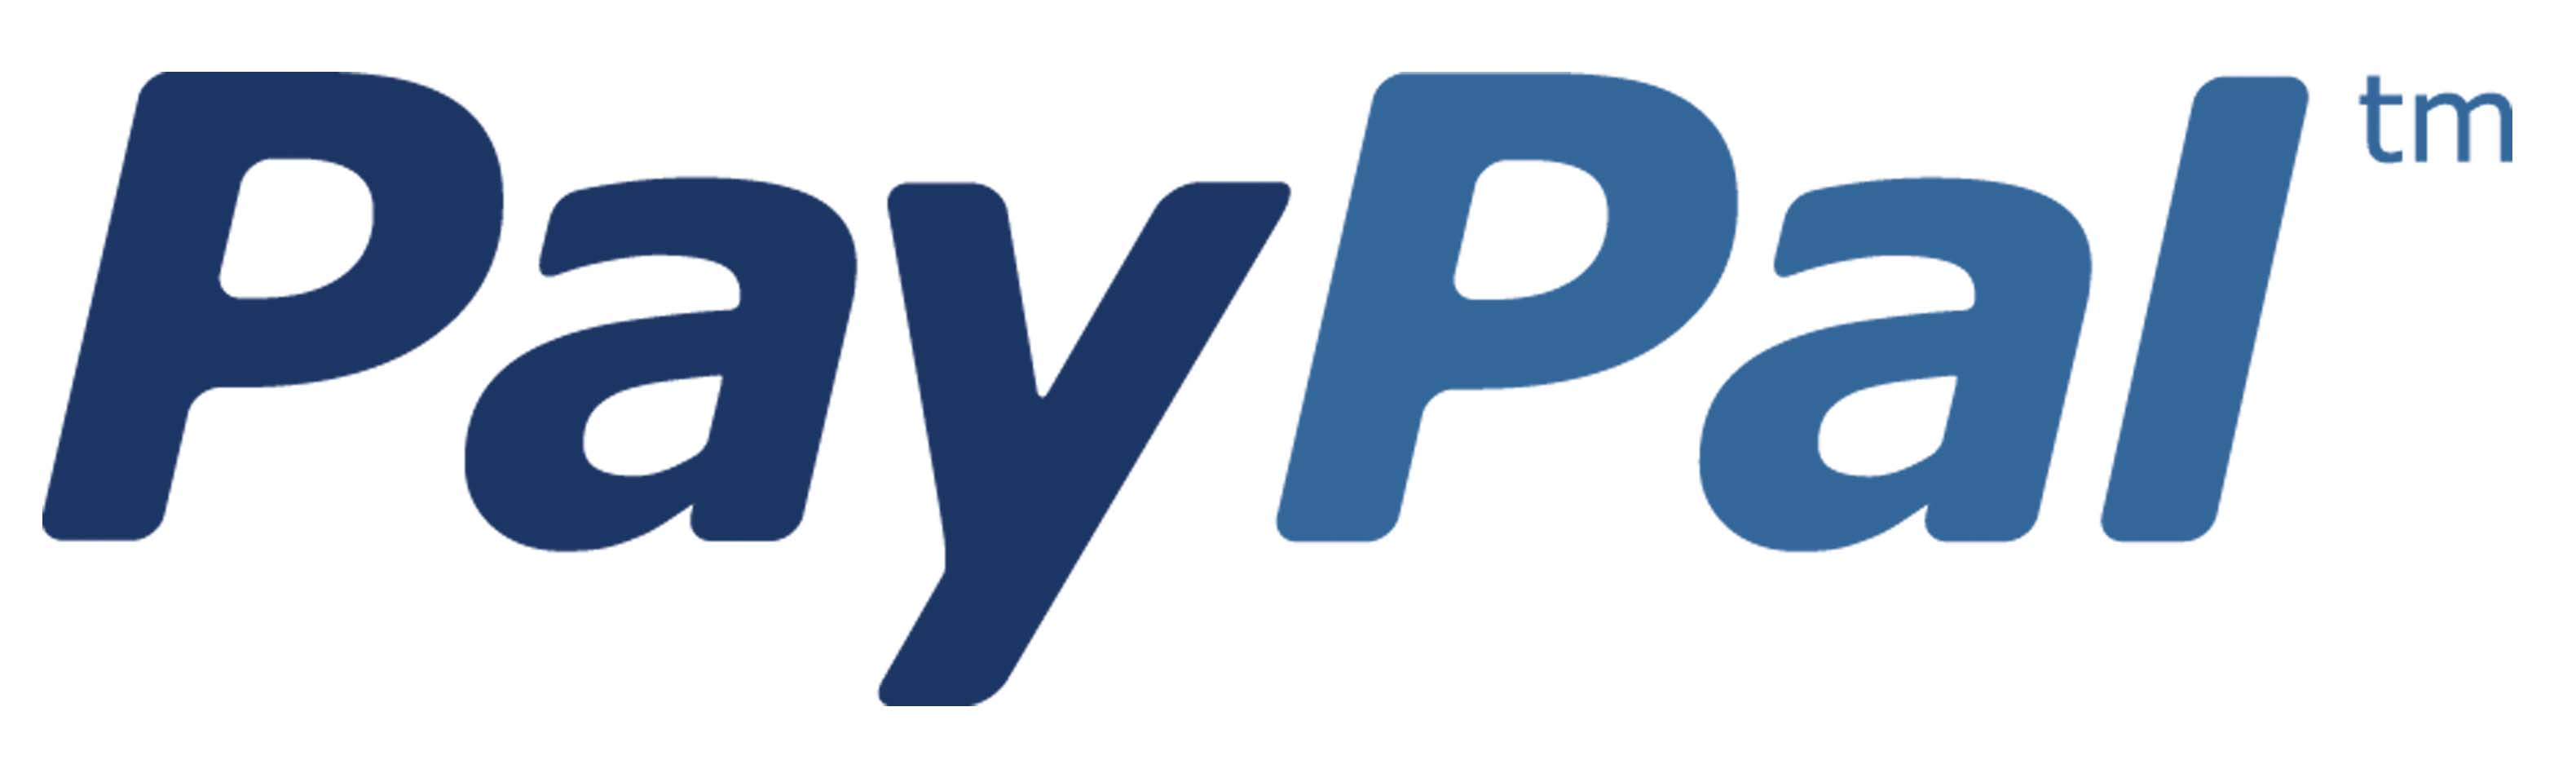 PP_Logo